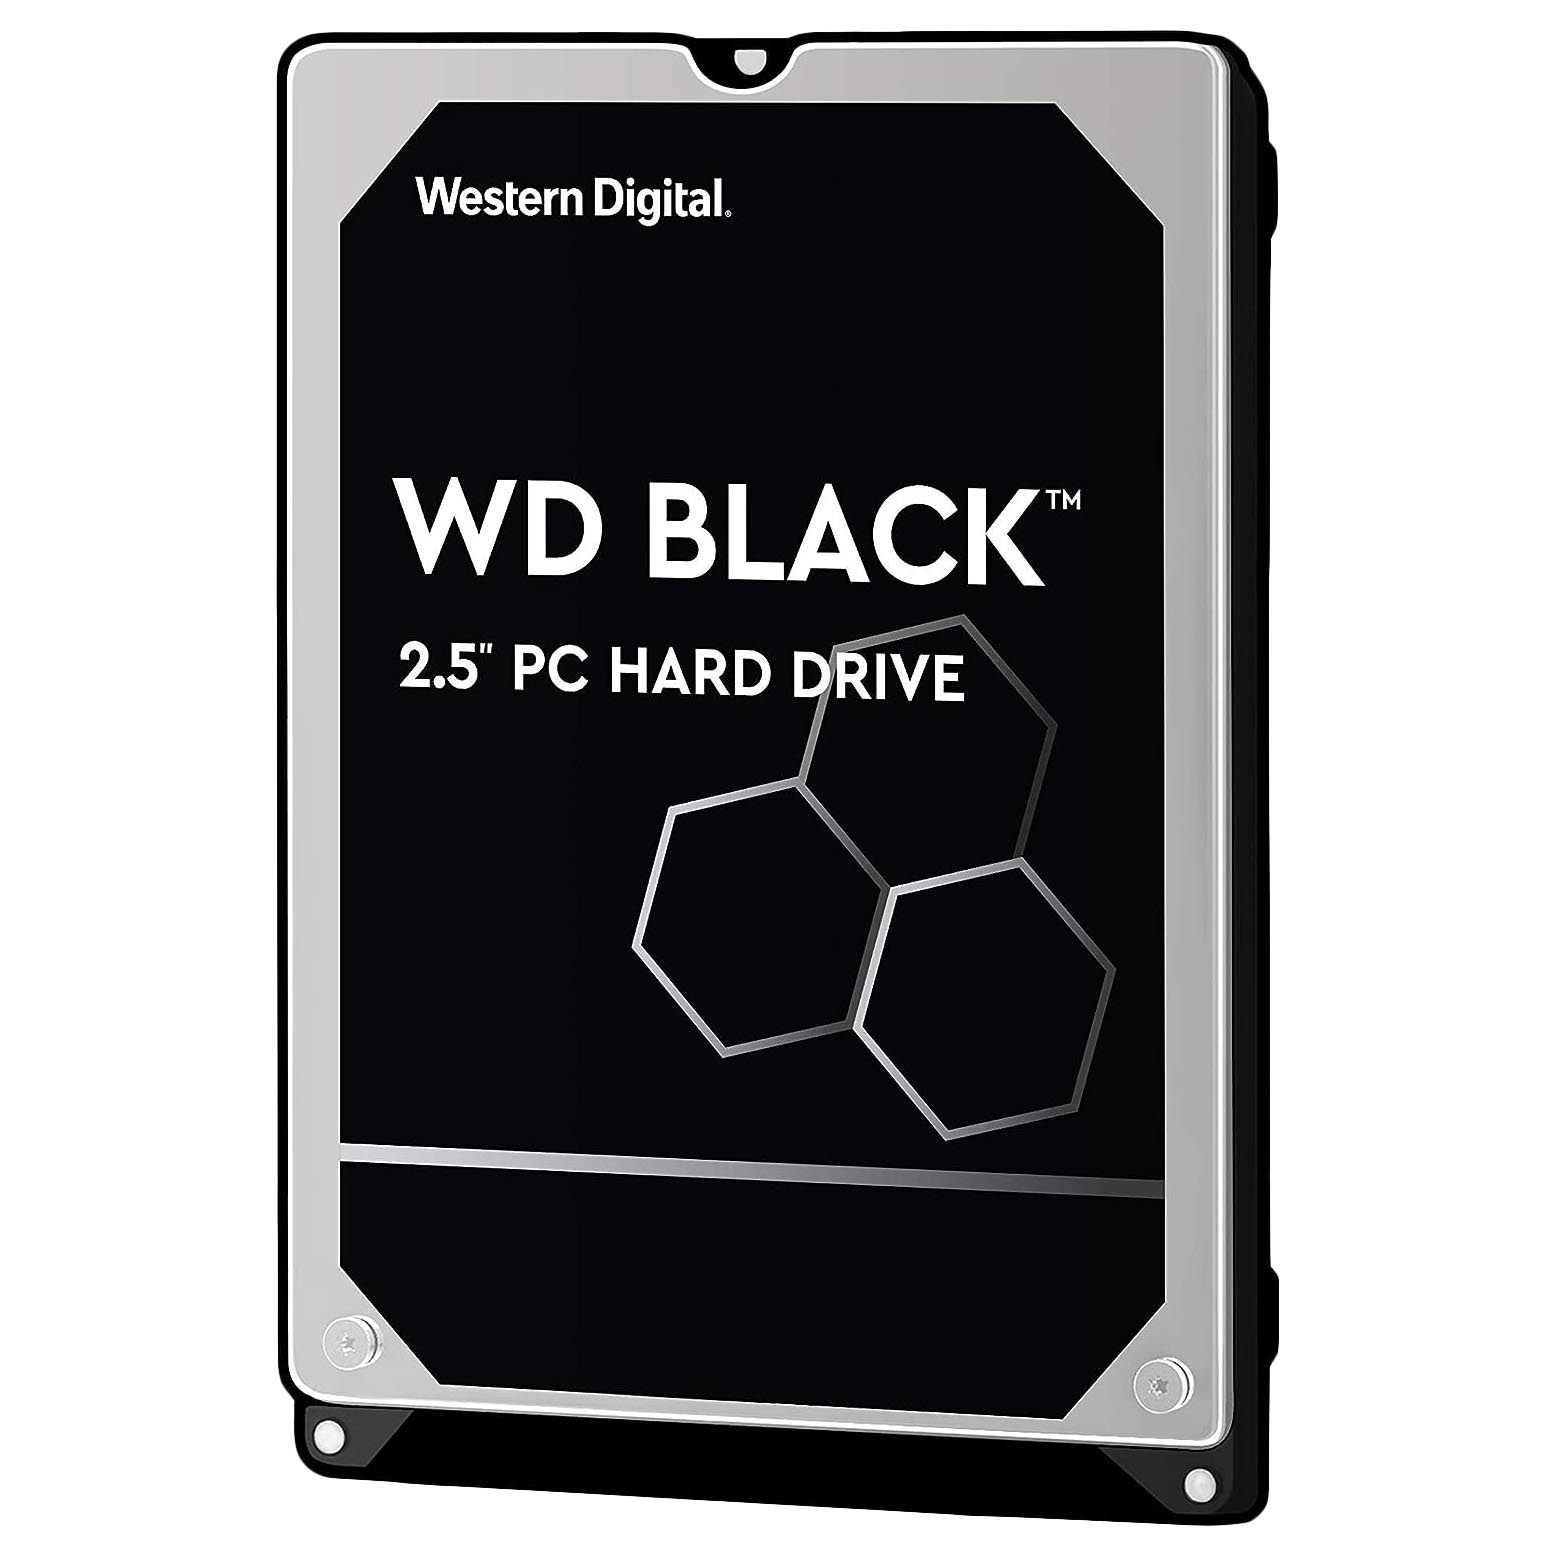 жесткий диск western digital wd black 320 гб wd3200lplx Внутренний жесткий диск Western Digital WD Black Performance Mobile, WD3200LPLX, 320Гб